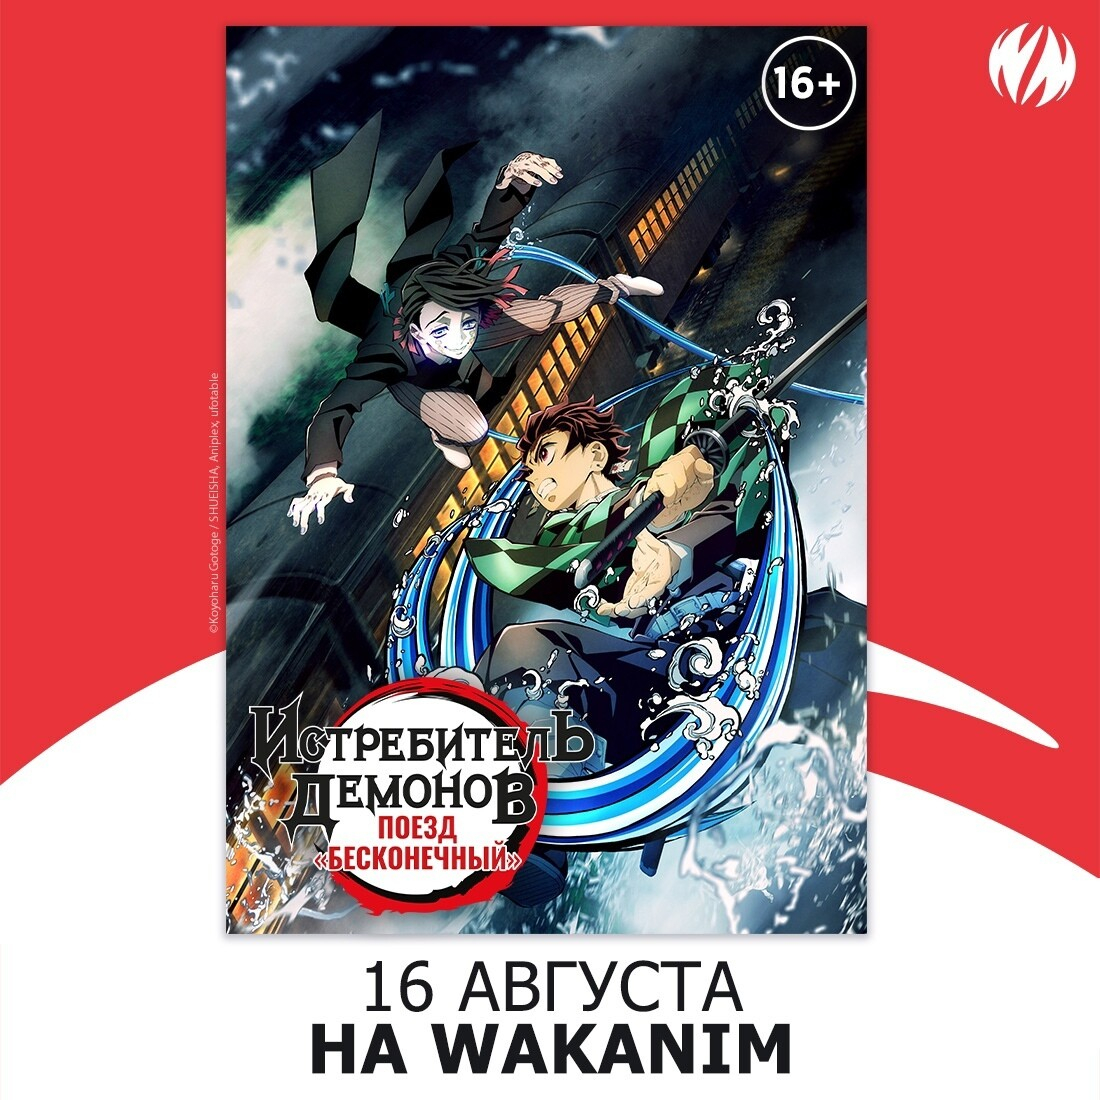 «Истребителя демонов: Поезд Бесконечный» покажут на Wakanim уже 16 августа